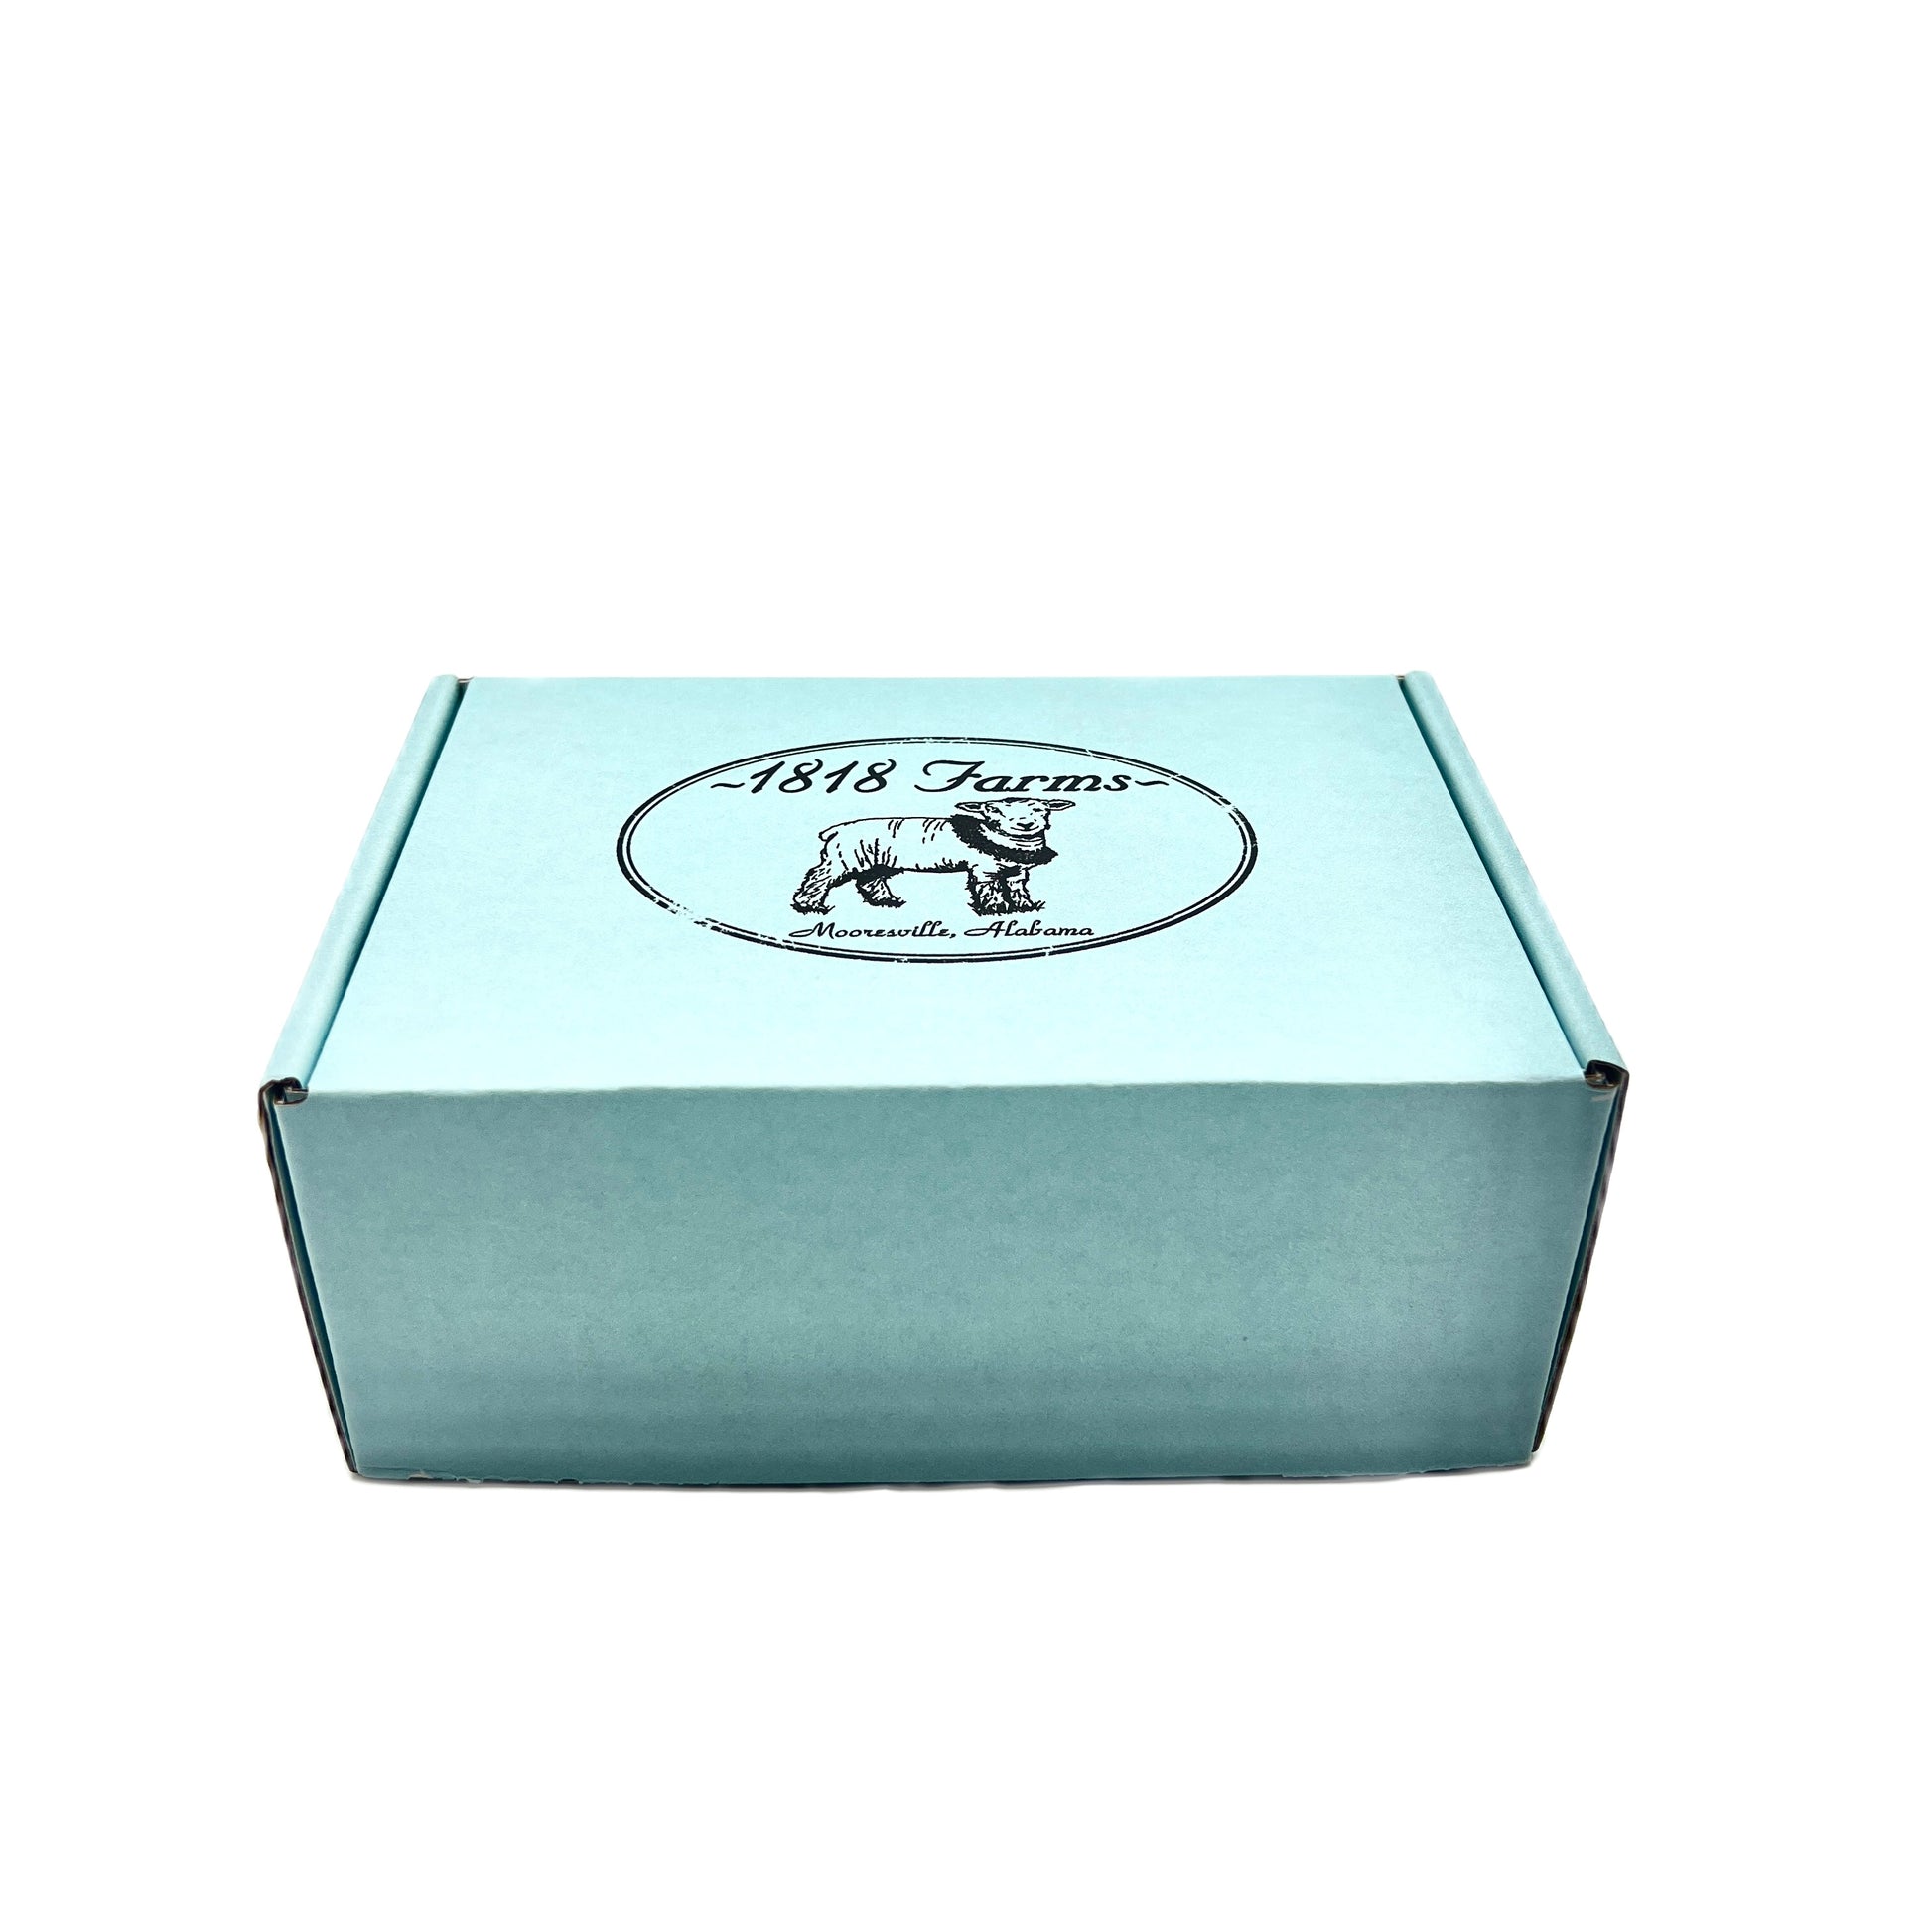 Shea Creme Sampler Box (2 fl oz jar sizes) Gift Basket 1818 Farms   